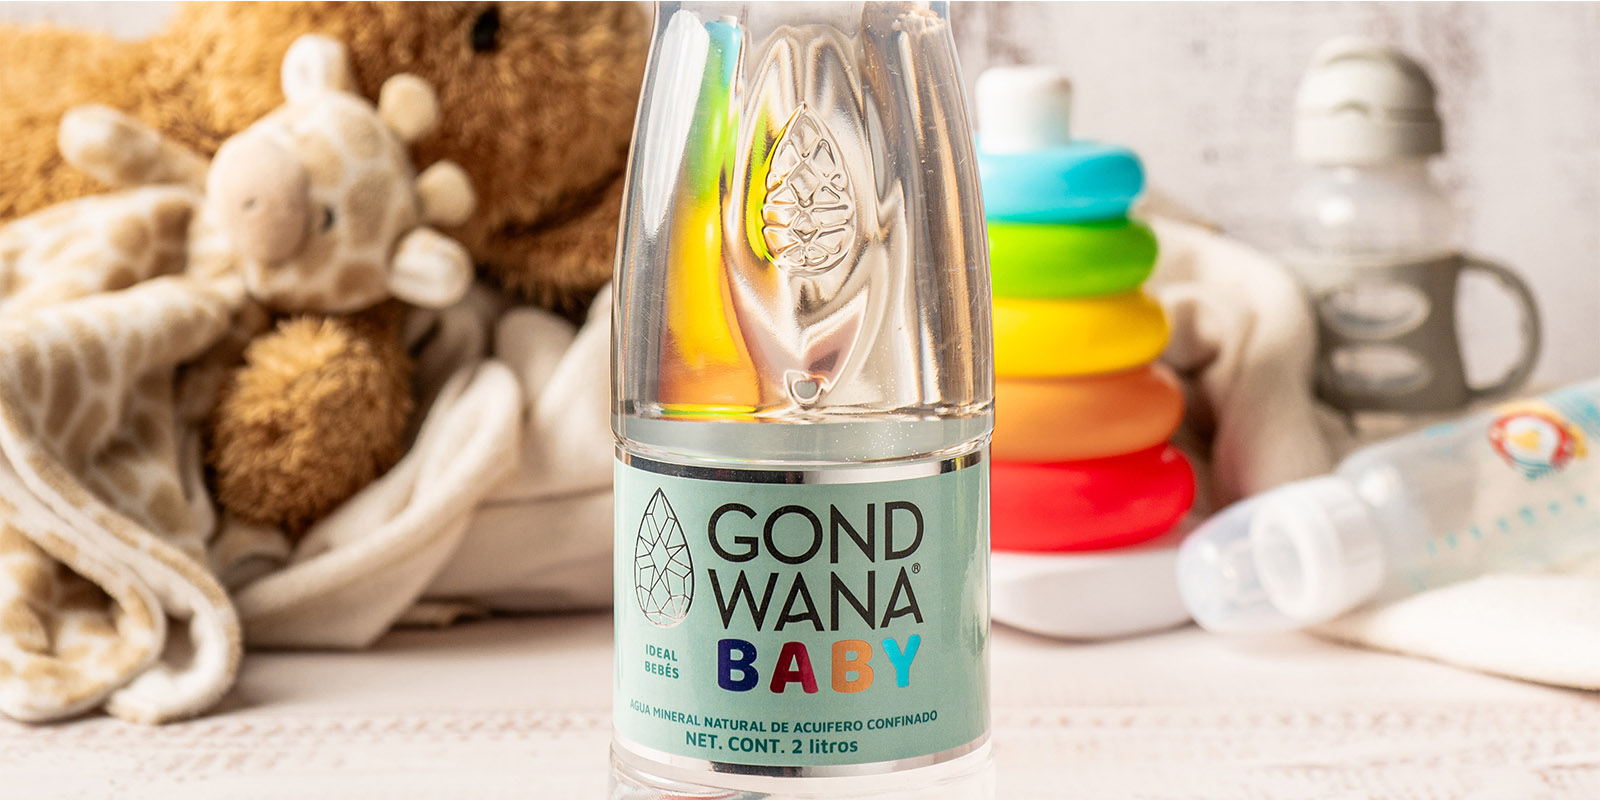 Una botella de agua mineral premium Gond Wana Baby, al lado de un osito de peluche y juguetes de bebé, diseño de packaging por Tridimage.